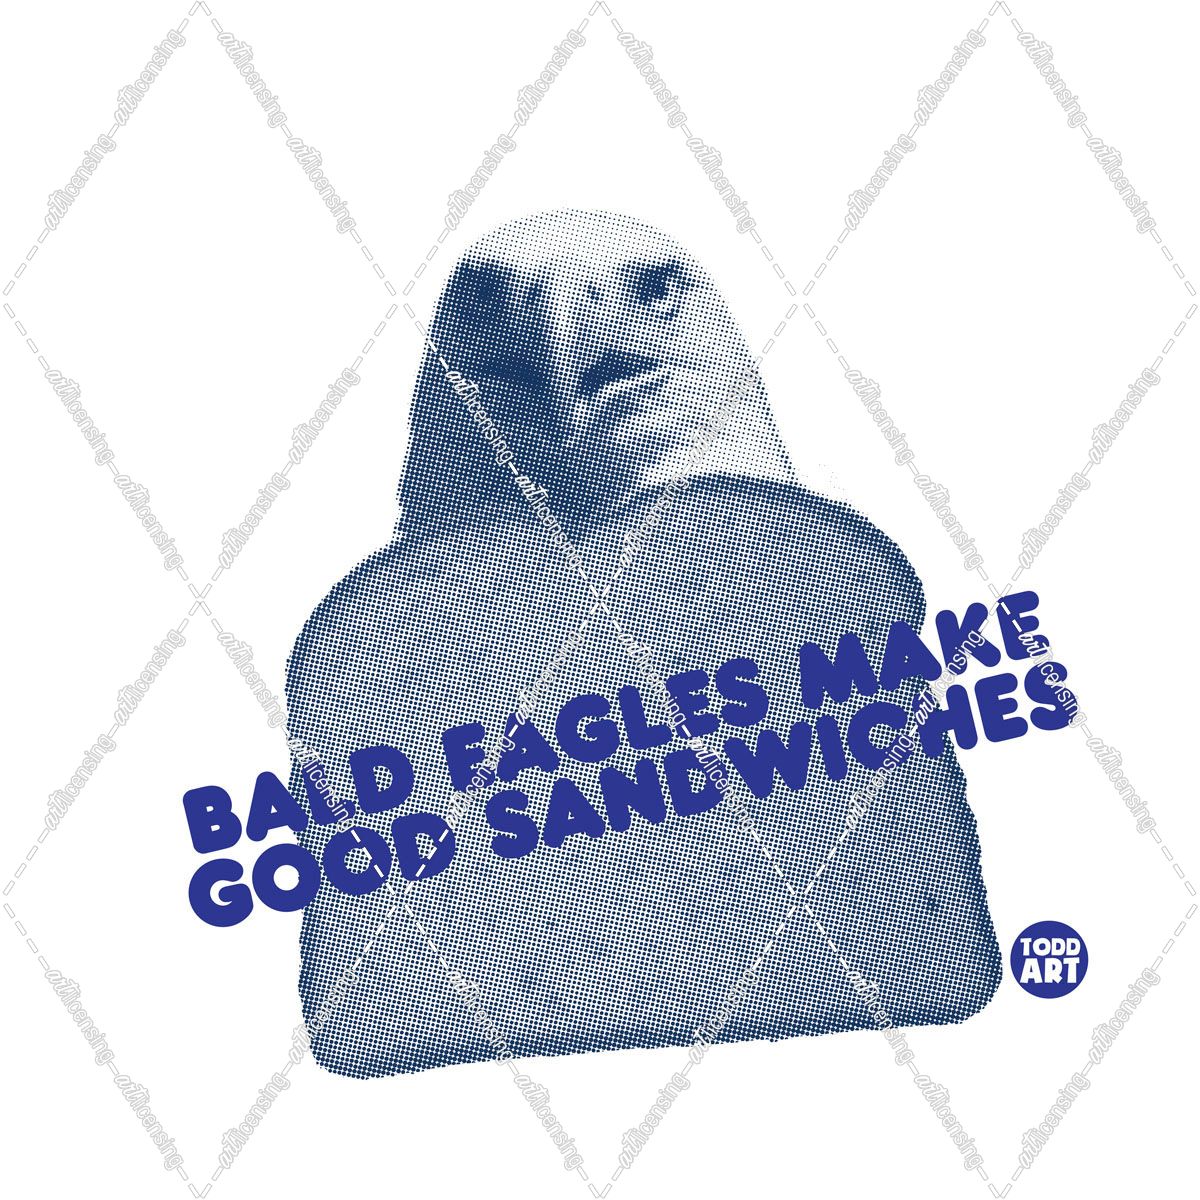 Bald Eagle Make Good Sandwiches